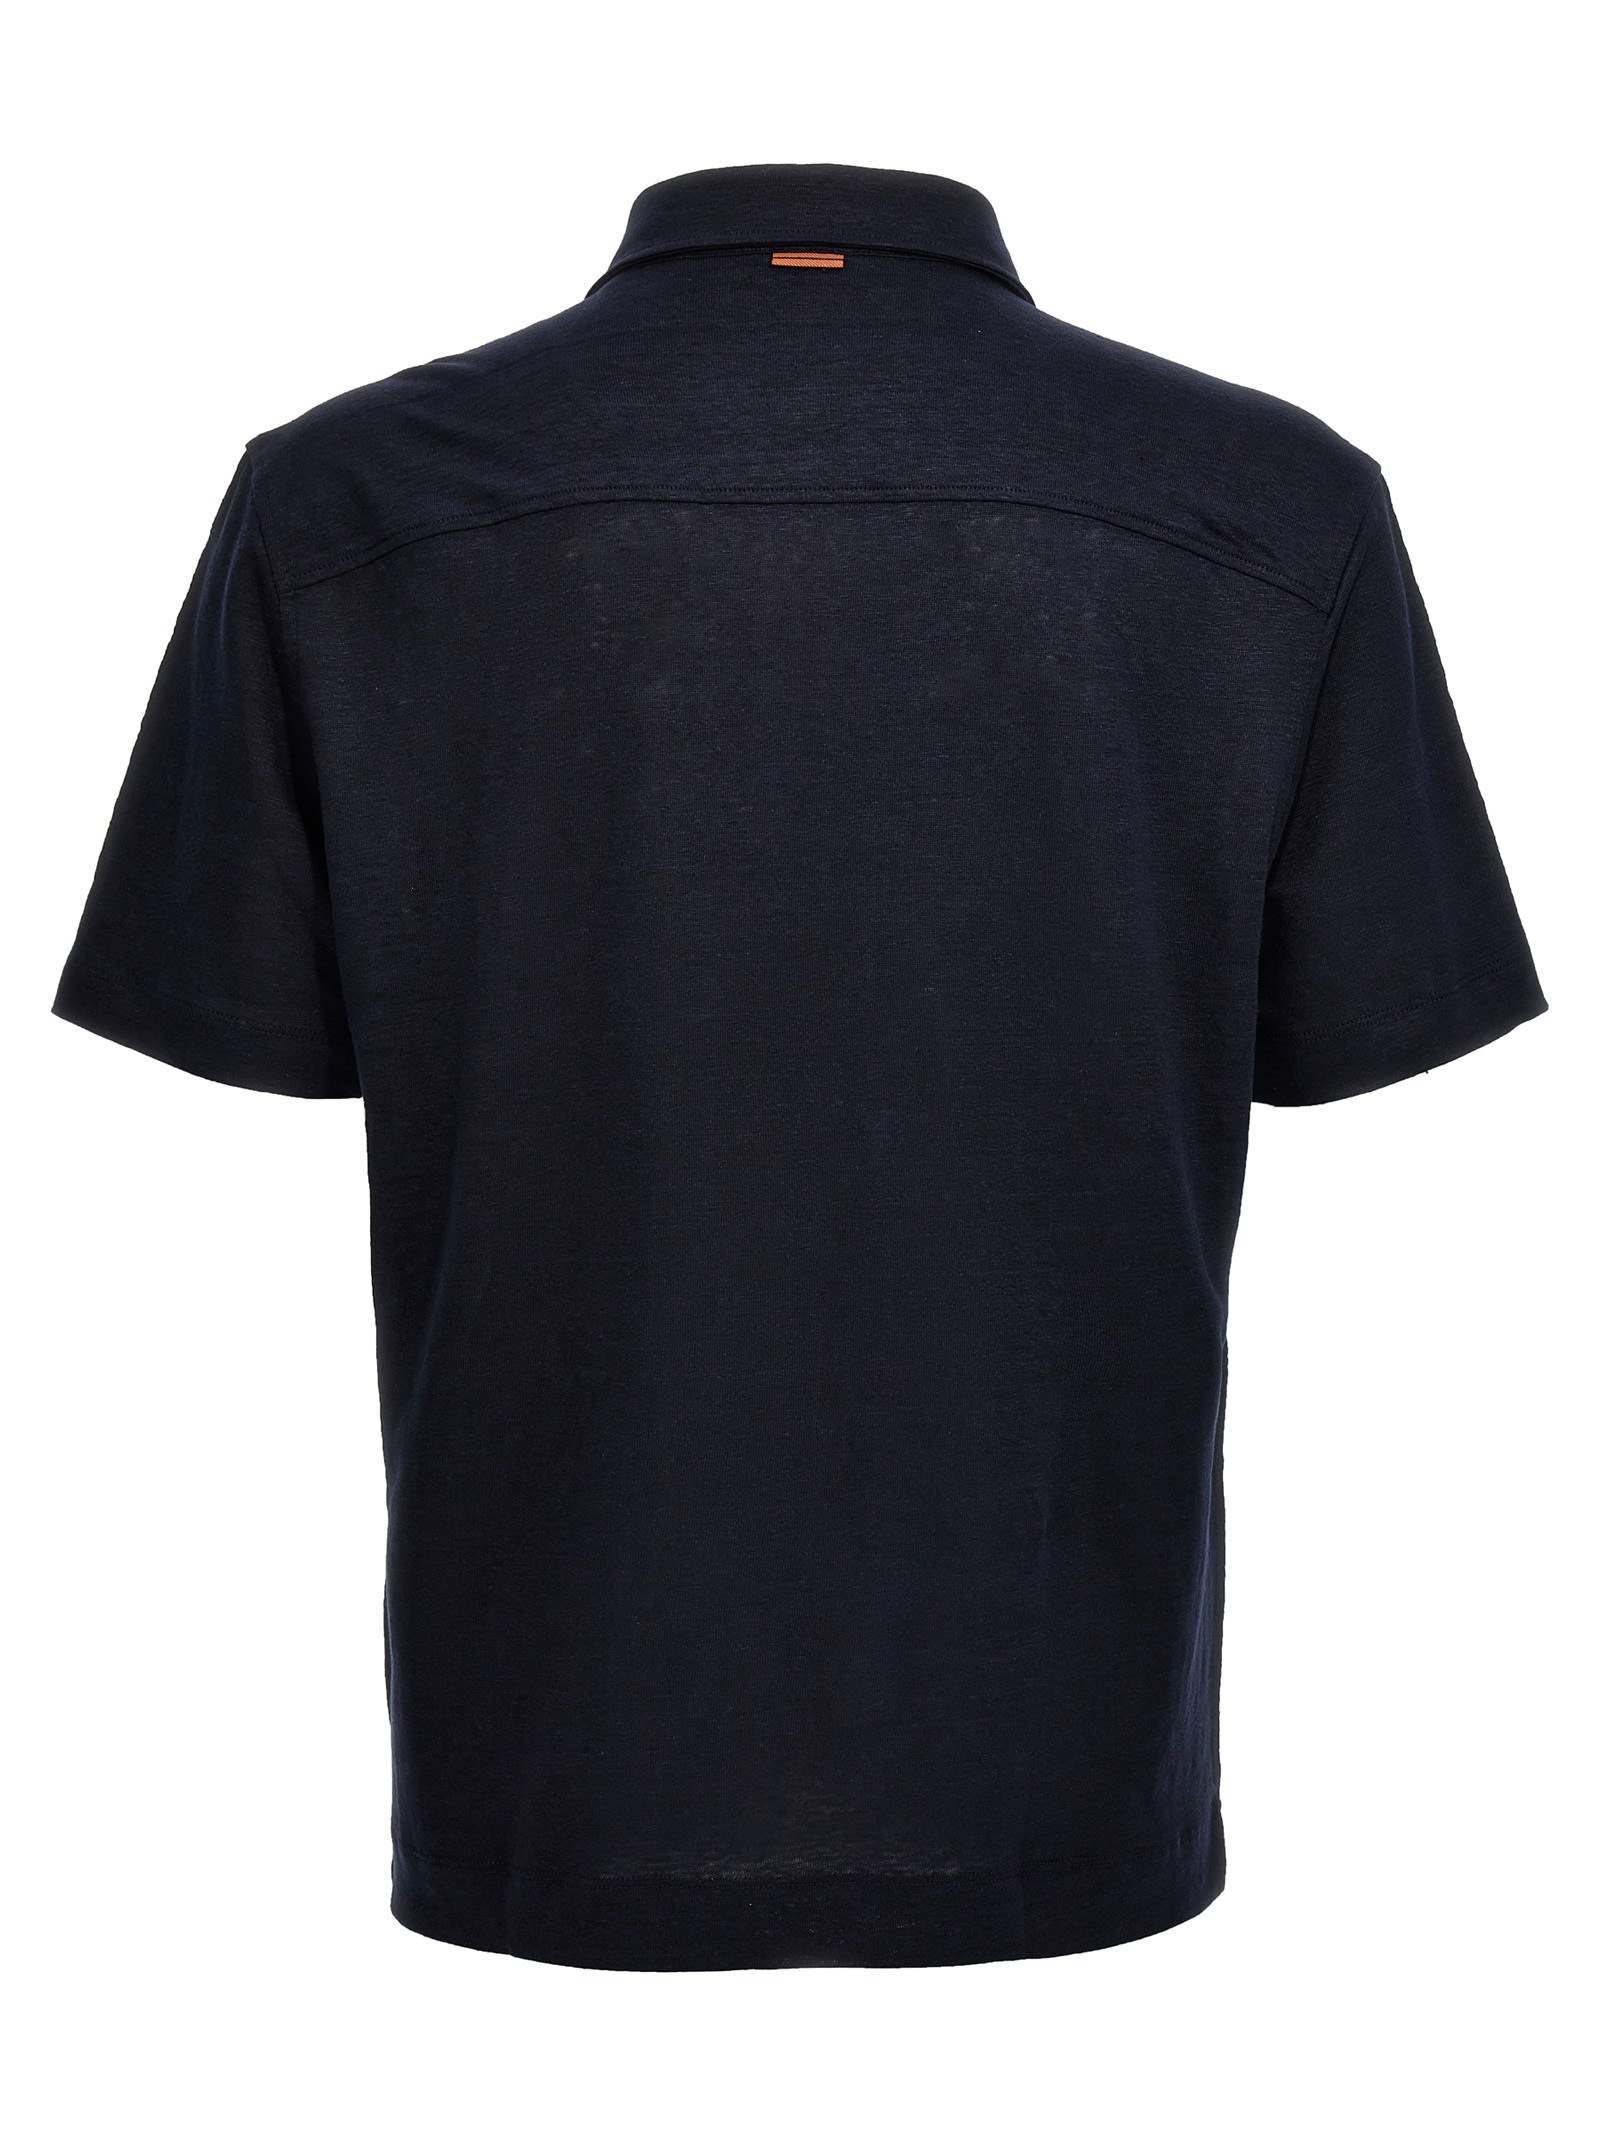 Shop Zegna Linen Polo Shirt